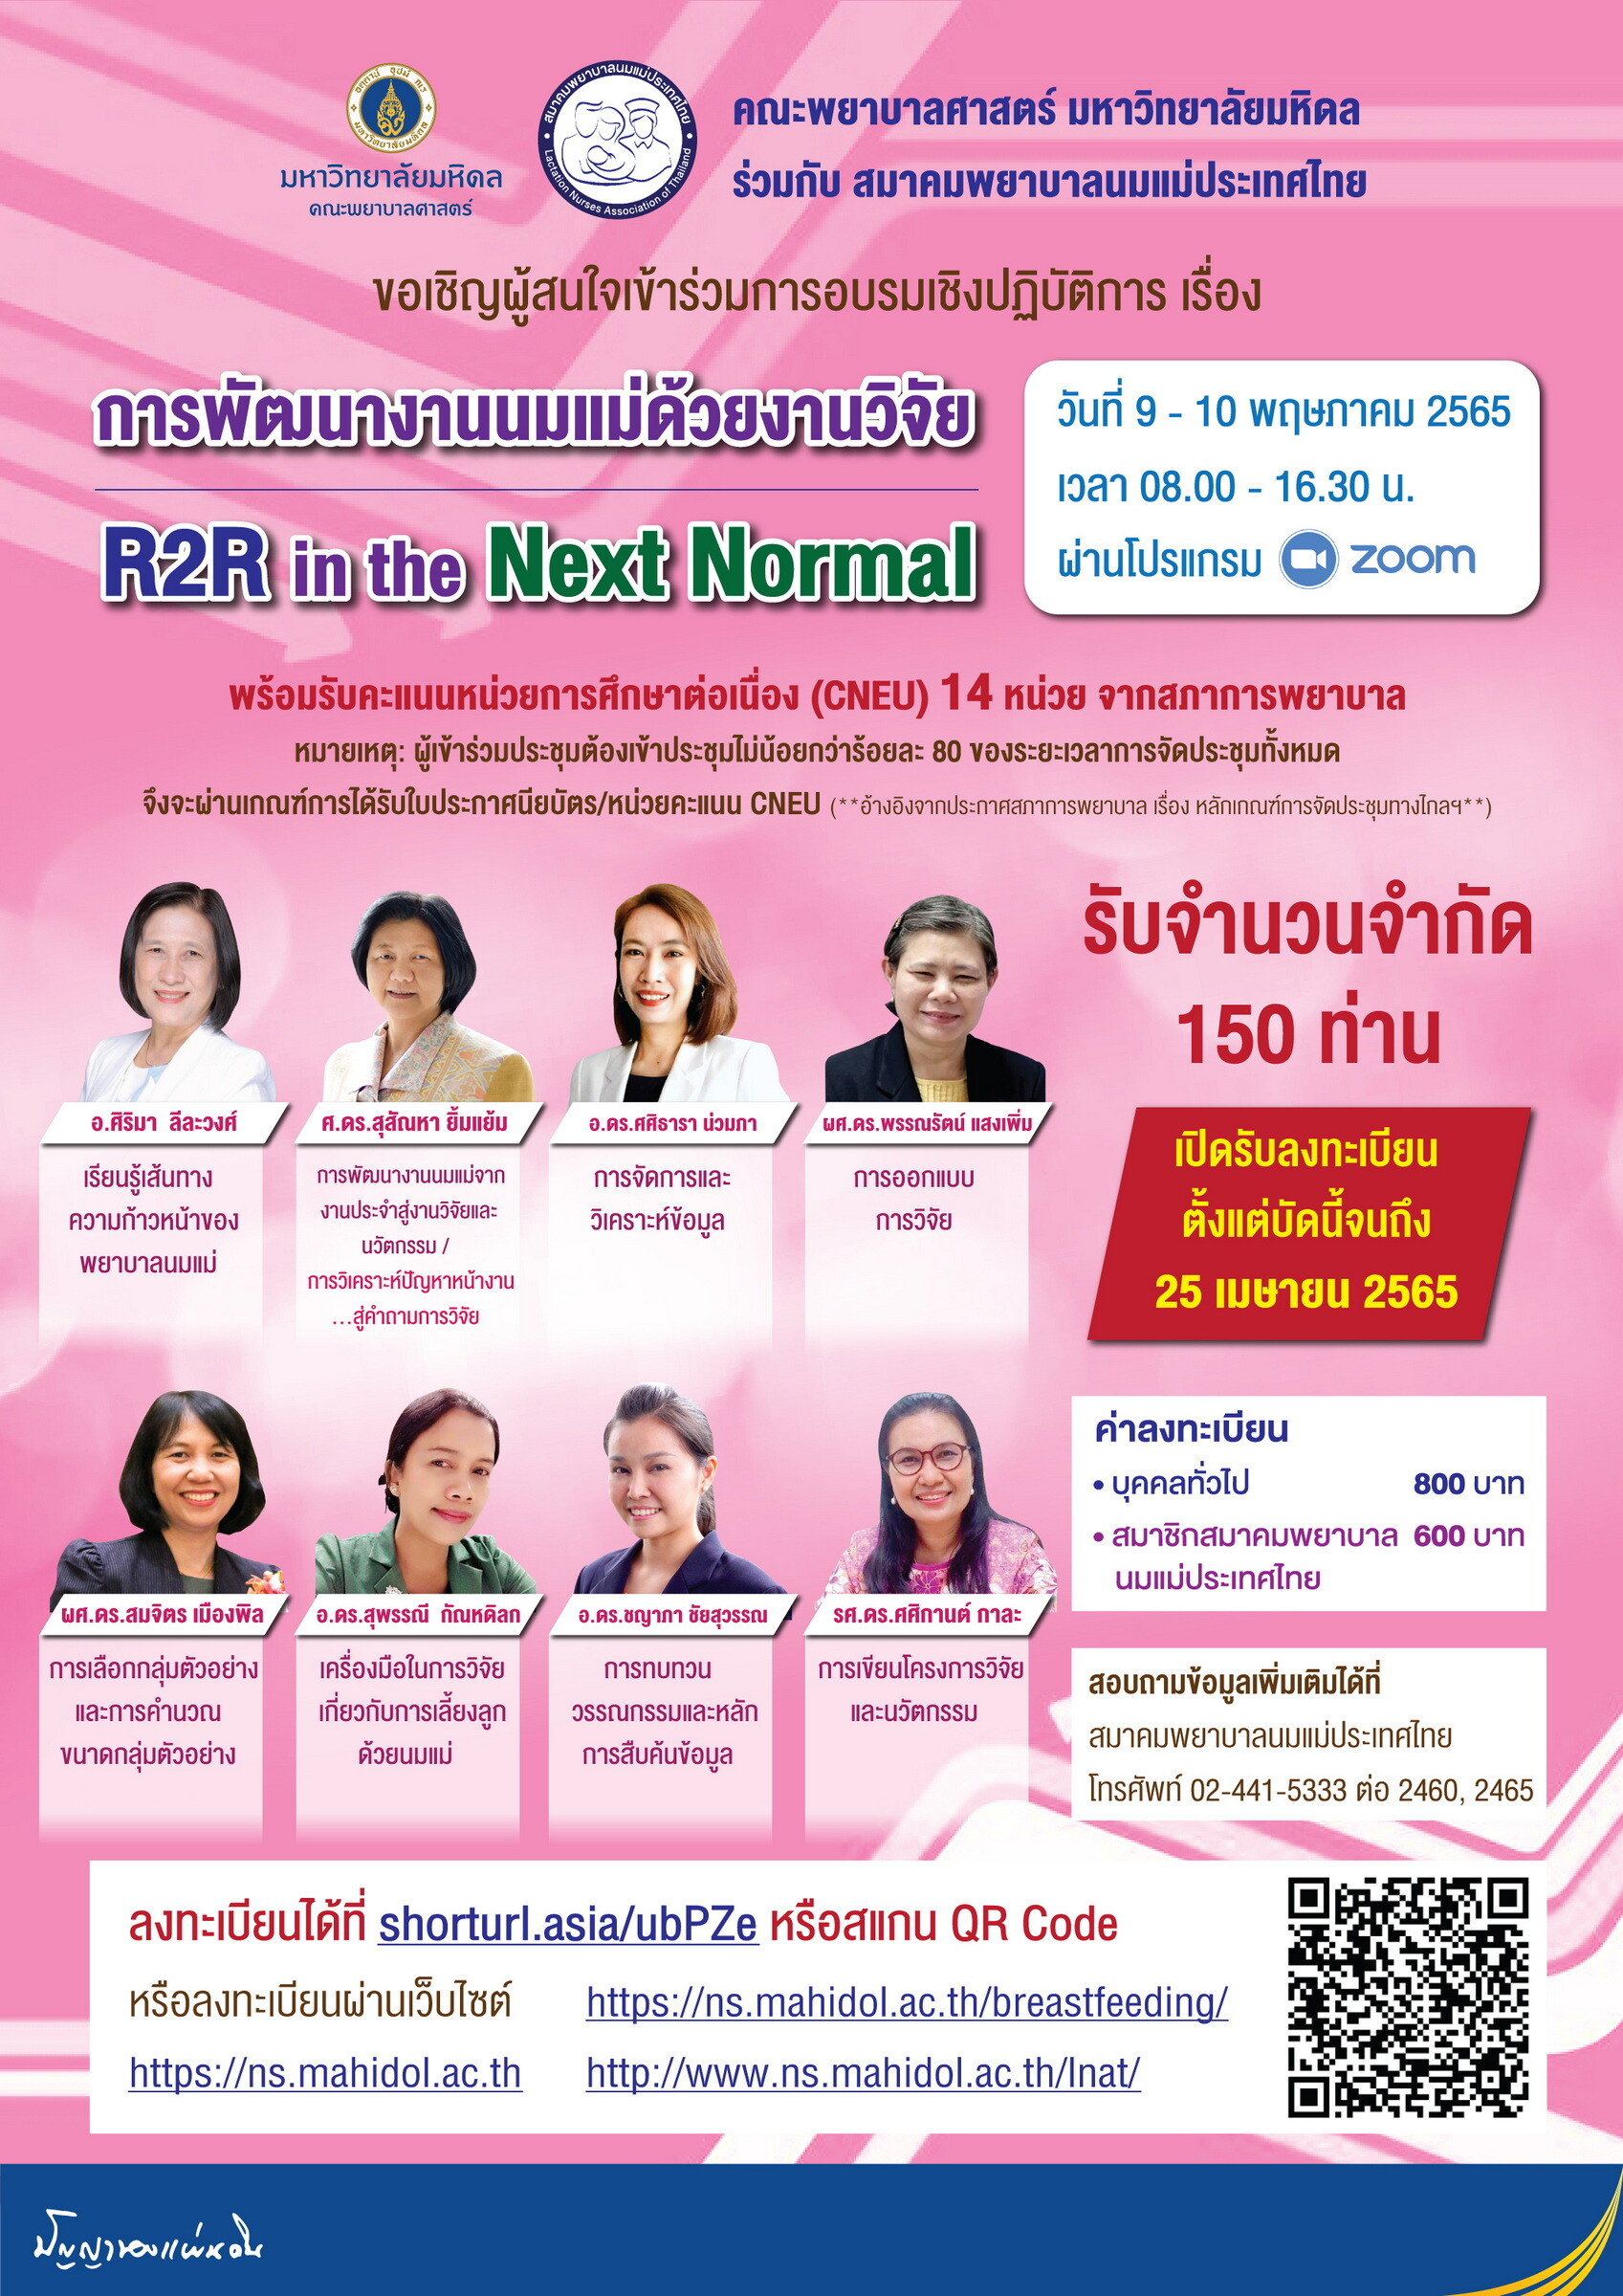 สมาคมพยาบาลนมแม่ประเทศไทย ร่วมกับ คณะพยาบาลศาสตร์ มหาวิทยาลัยมหิดล ขอเชิญชวนเข้าร่วมอบรมเชิงปฏิบัติการ เรื่อง "การพัฒนางานนมแม่ด้วยงานวิจัย R2R in the Next Normal"